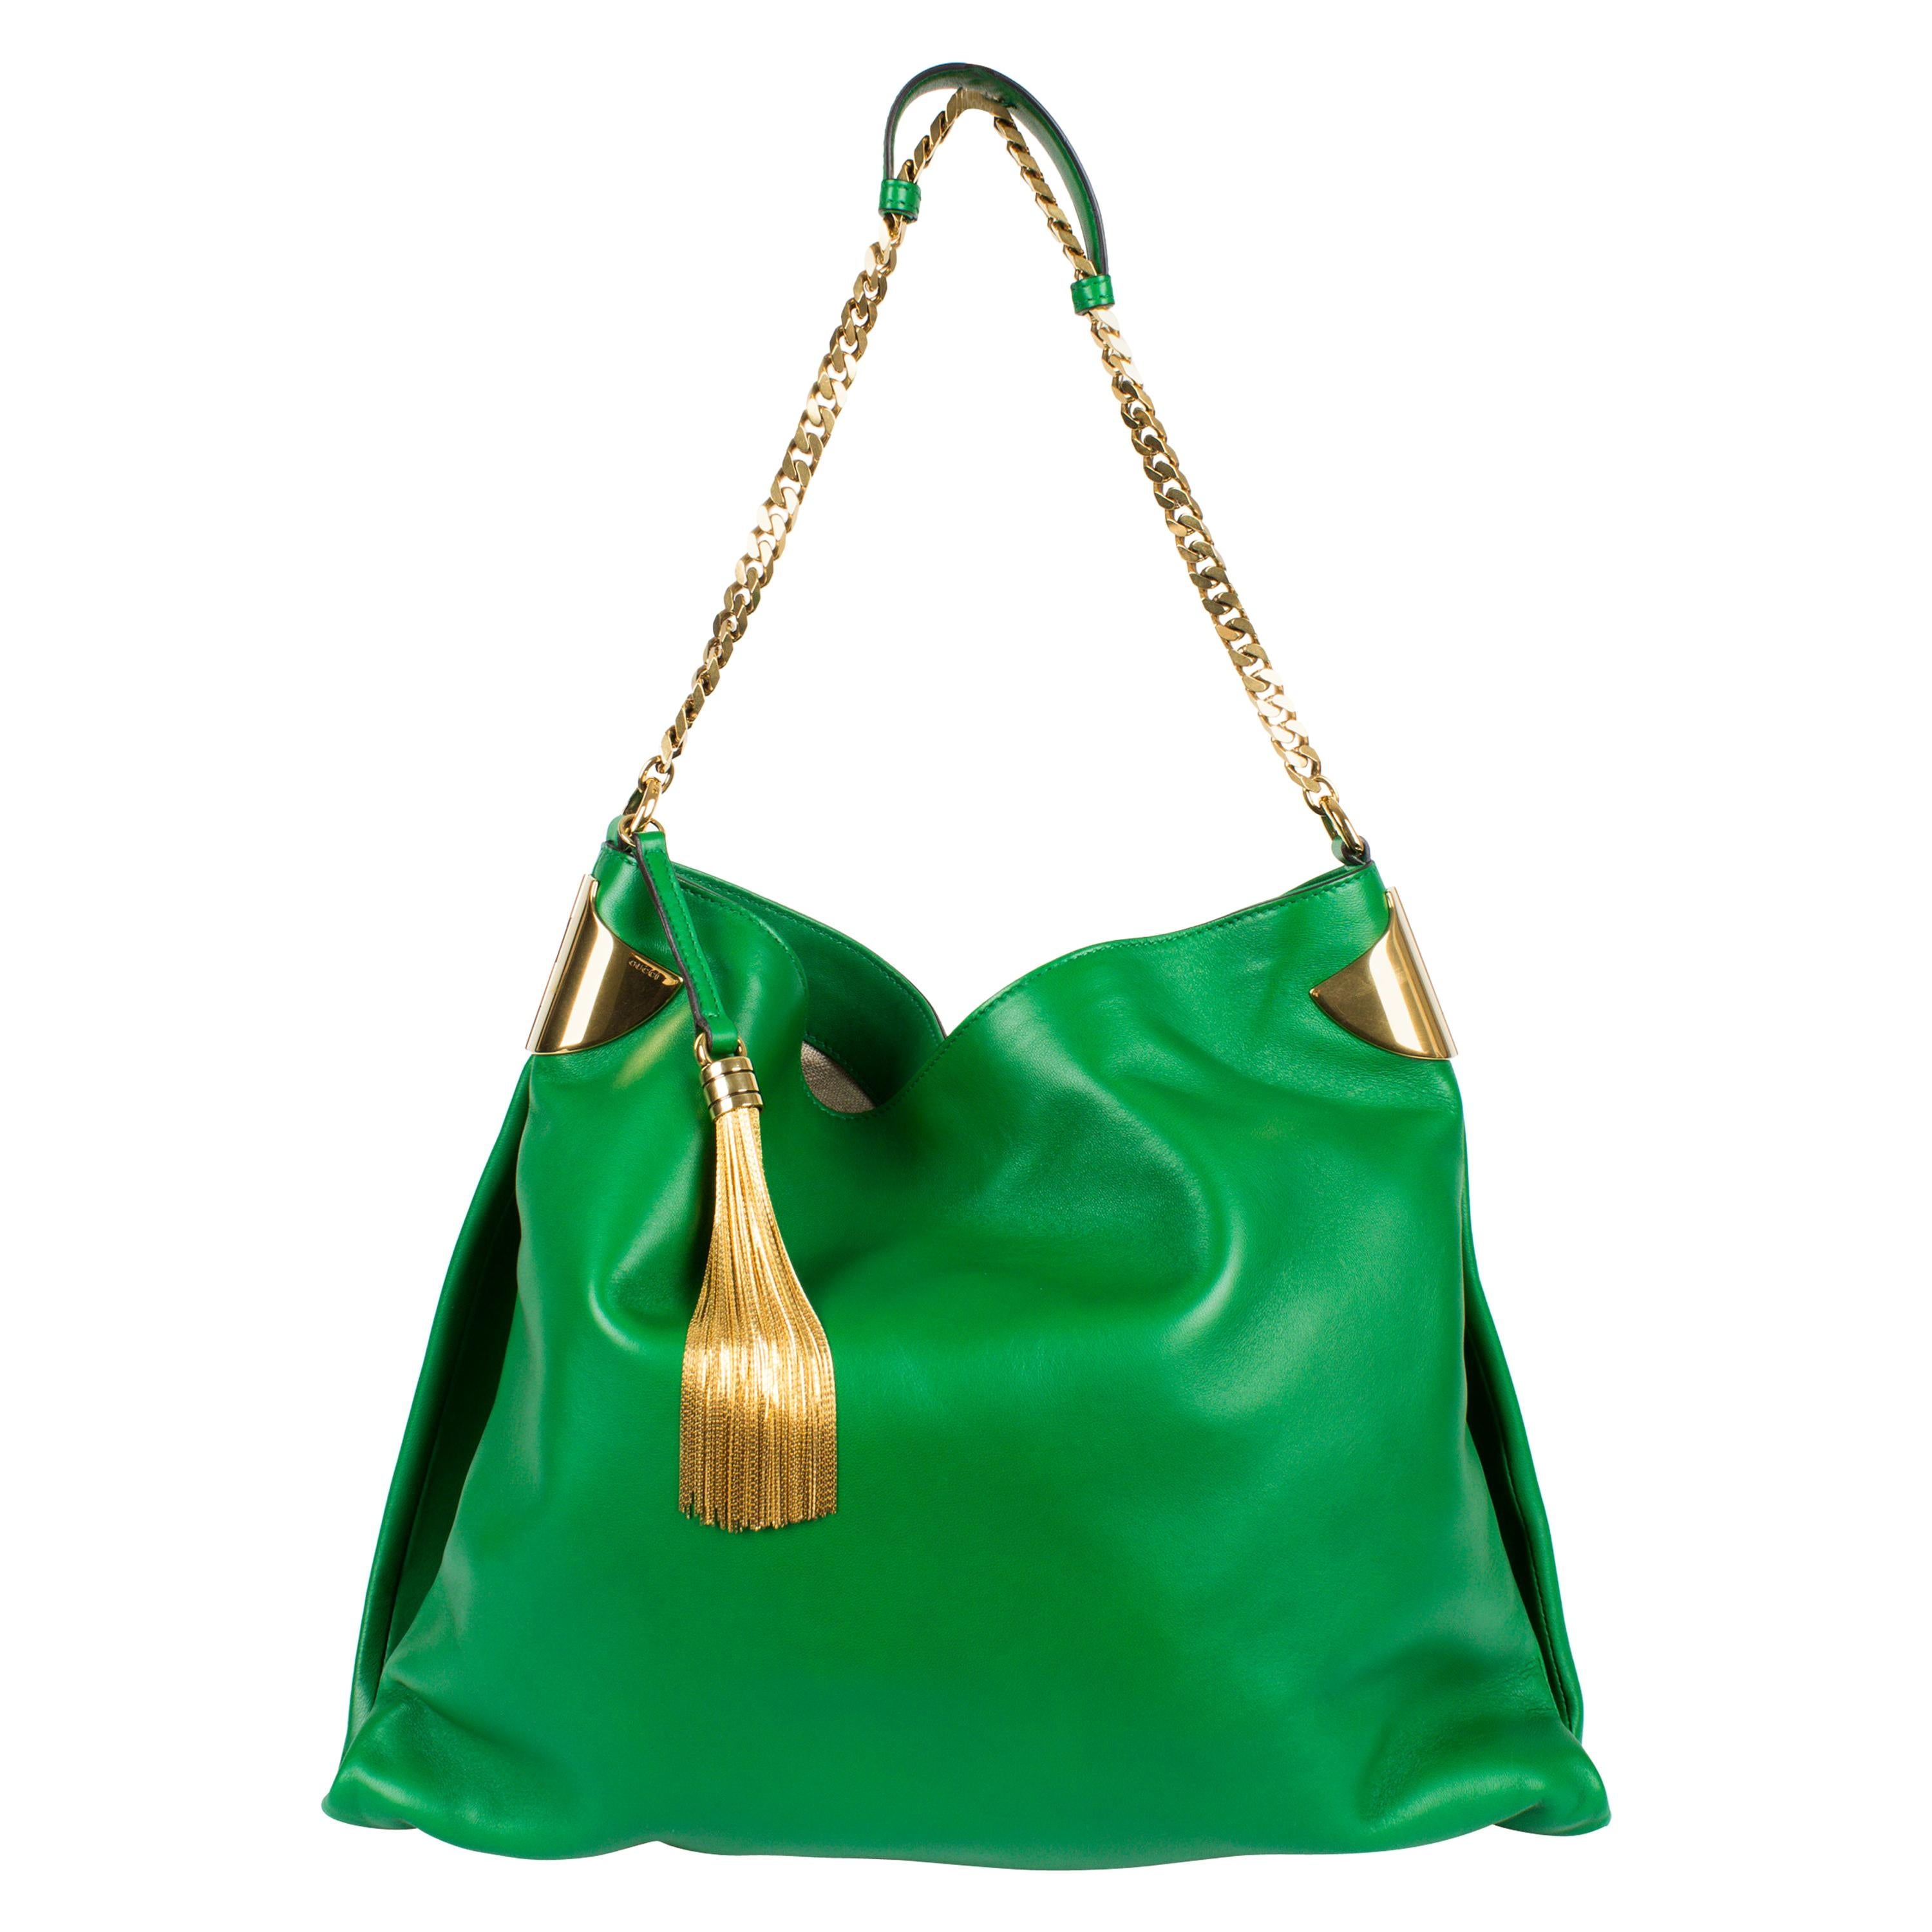 Gucci 1970 Medium Shoulder Bag - green leather/gold